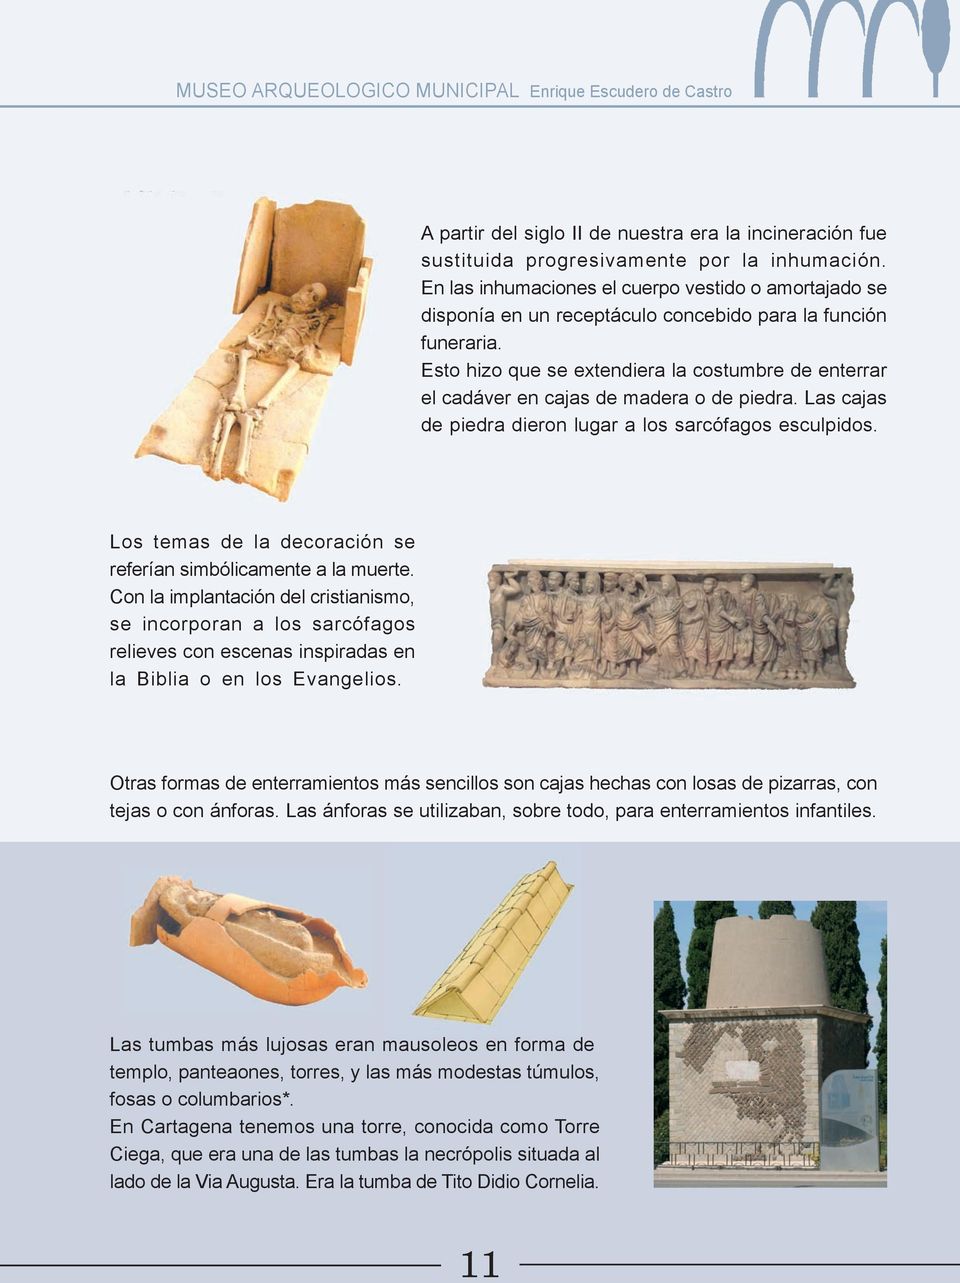 Esto hizo que se extendiera la costumbre de enterrar el cadáver en cajas de madera o de piedra. Las cajas de piedra dieron lugar a los sarcófagos esculpidos.